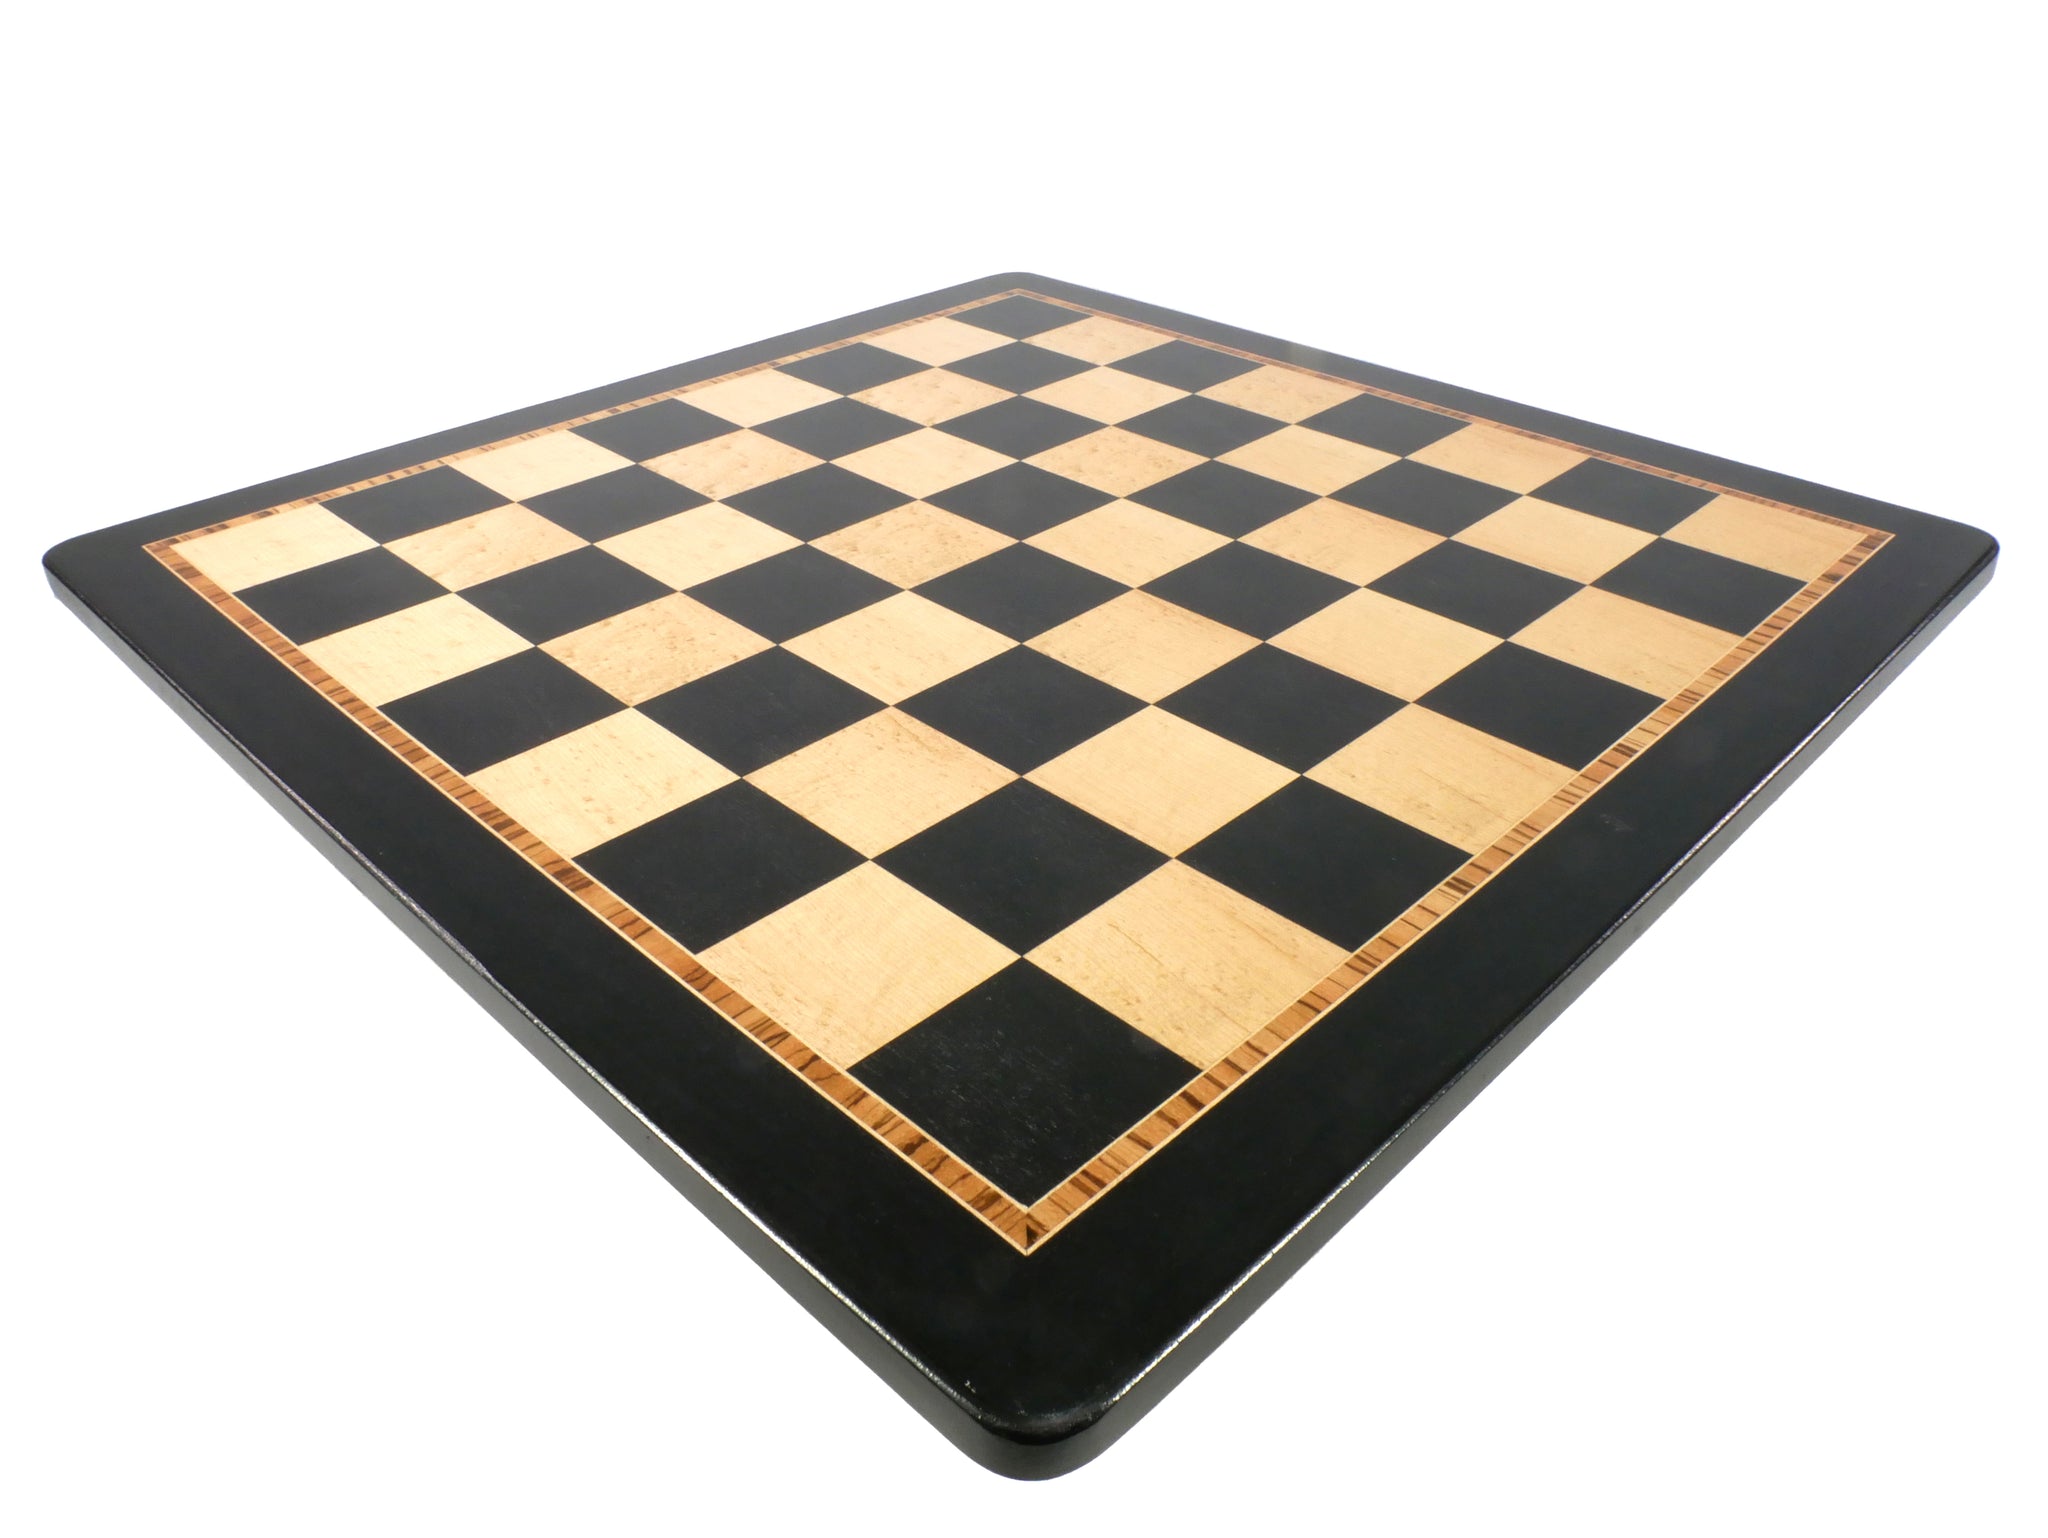 Chess Board - 21" Ebony & Birdseye Maple Chess Board